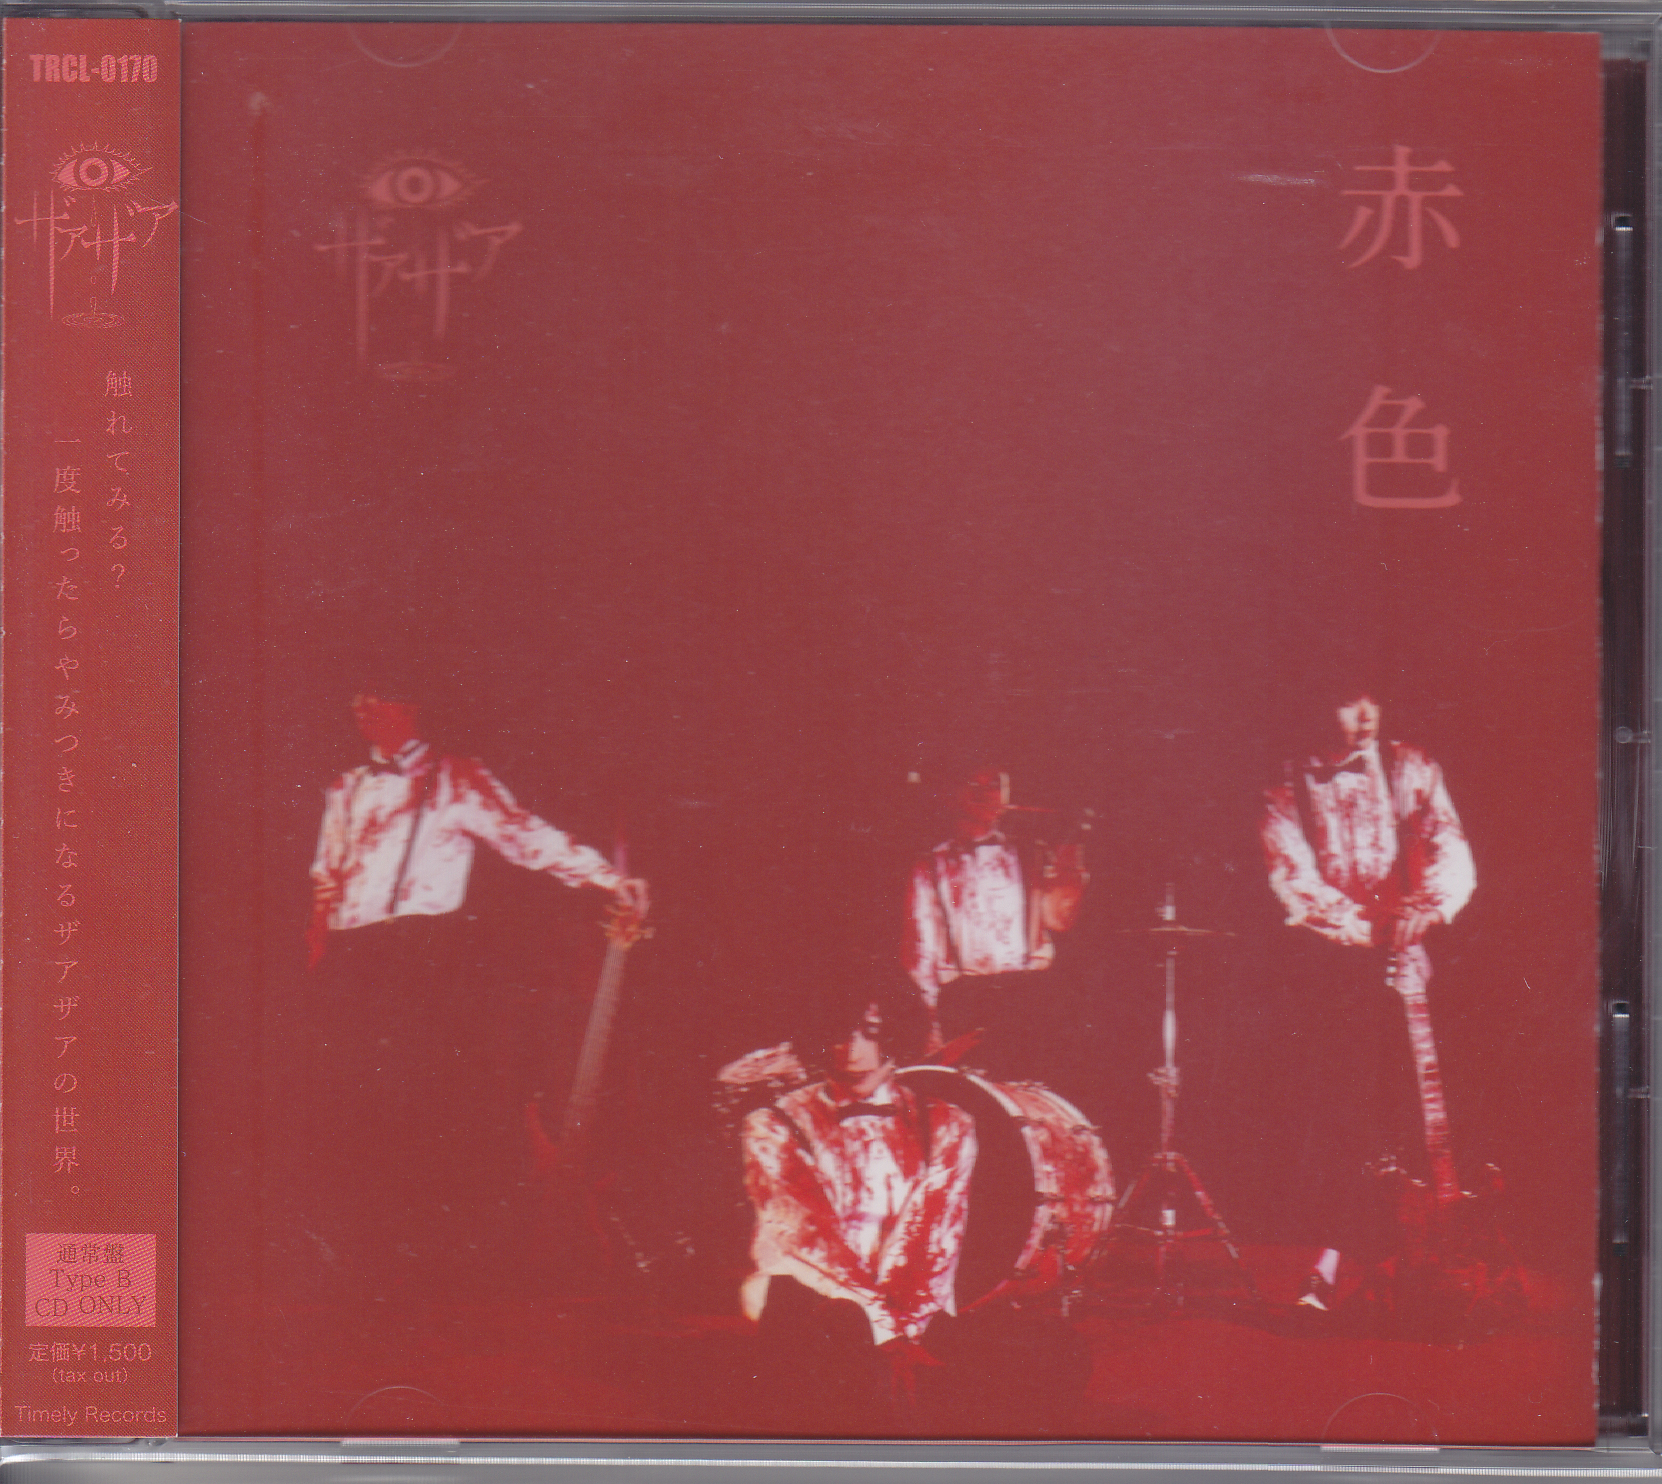 ザアザア ( ザアザア )  の CD 【Btype】赤色